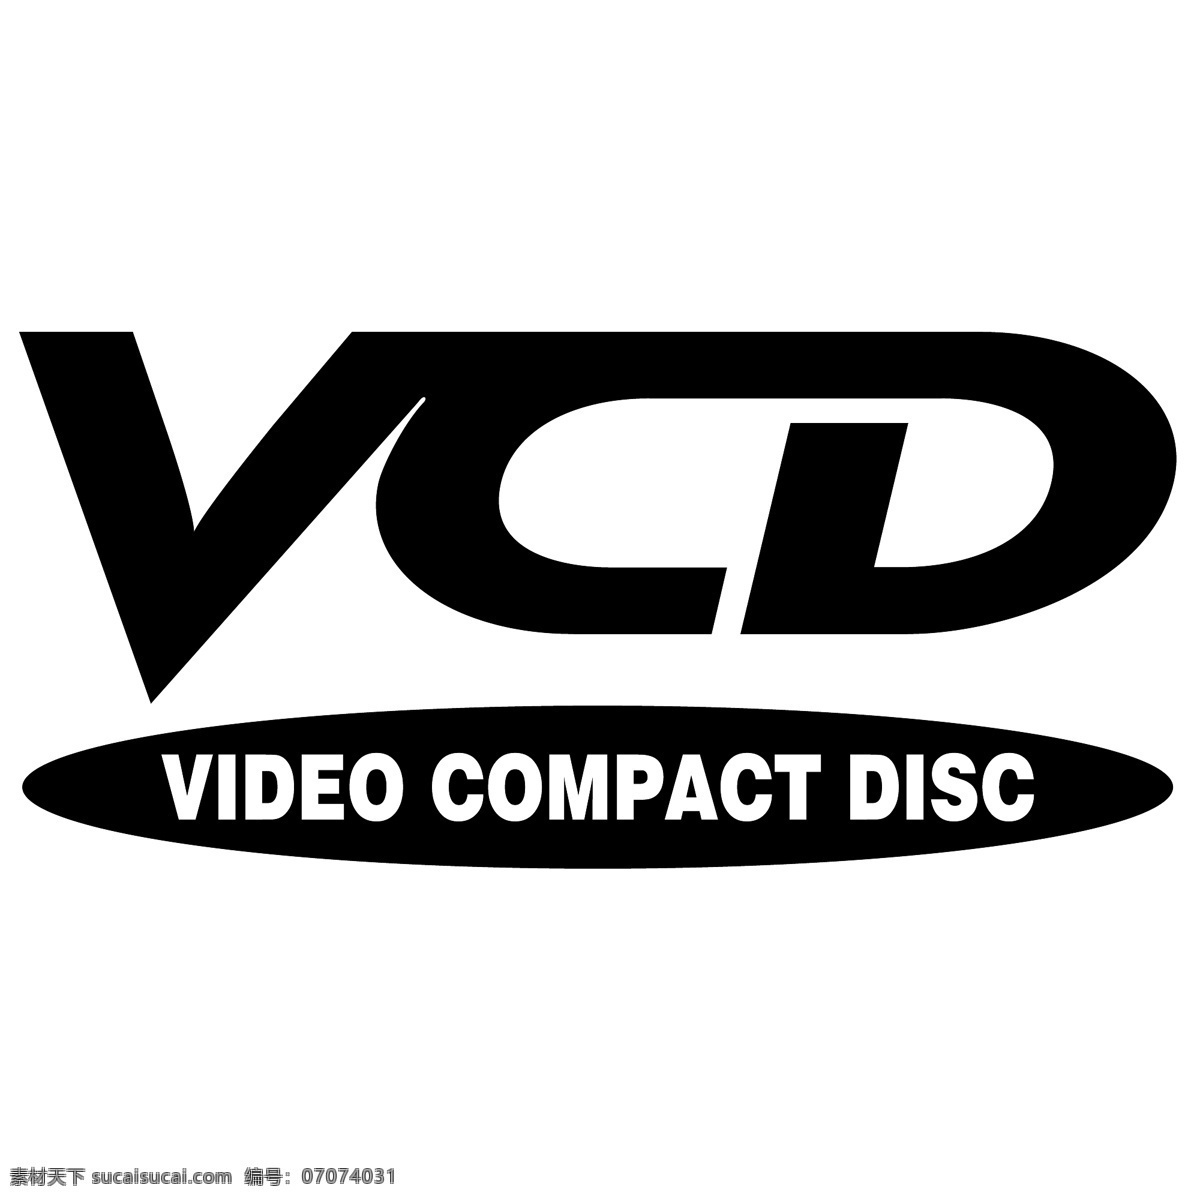 vcd 标识 公司 免费 品牌 品牌标识 商标 矢量标志下载 免费矢量标识 矢量 psd源文件 logo设计